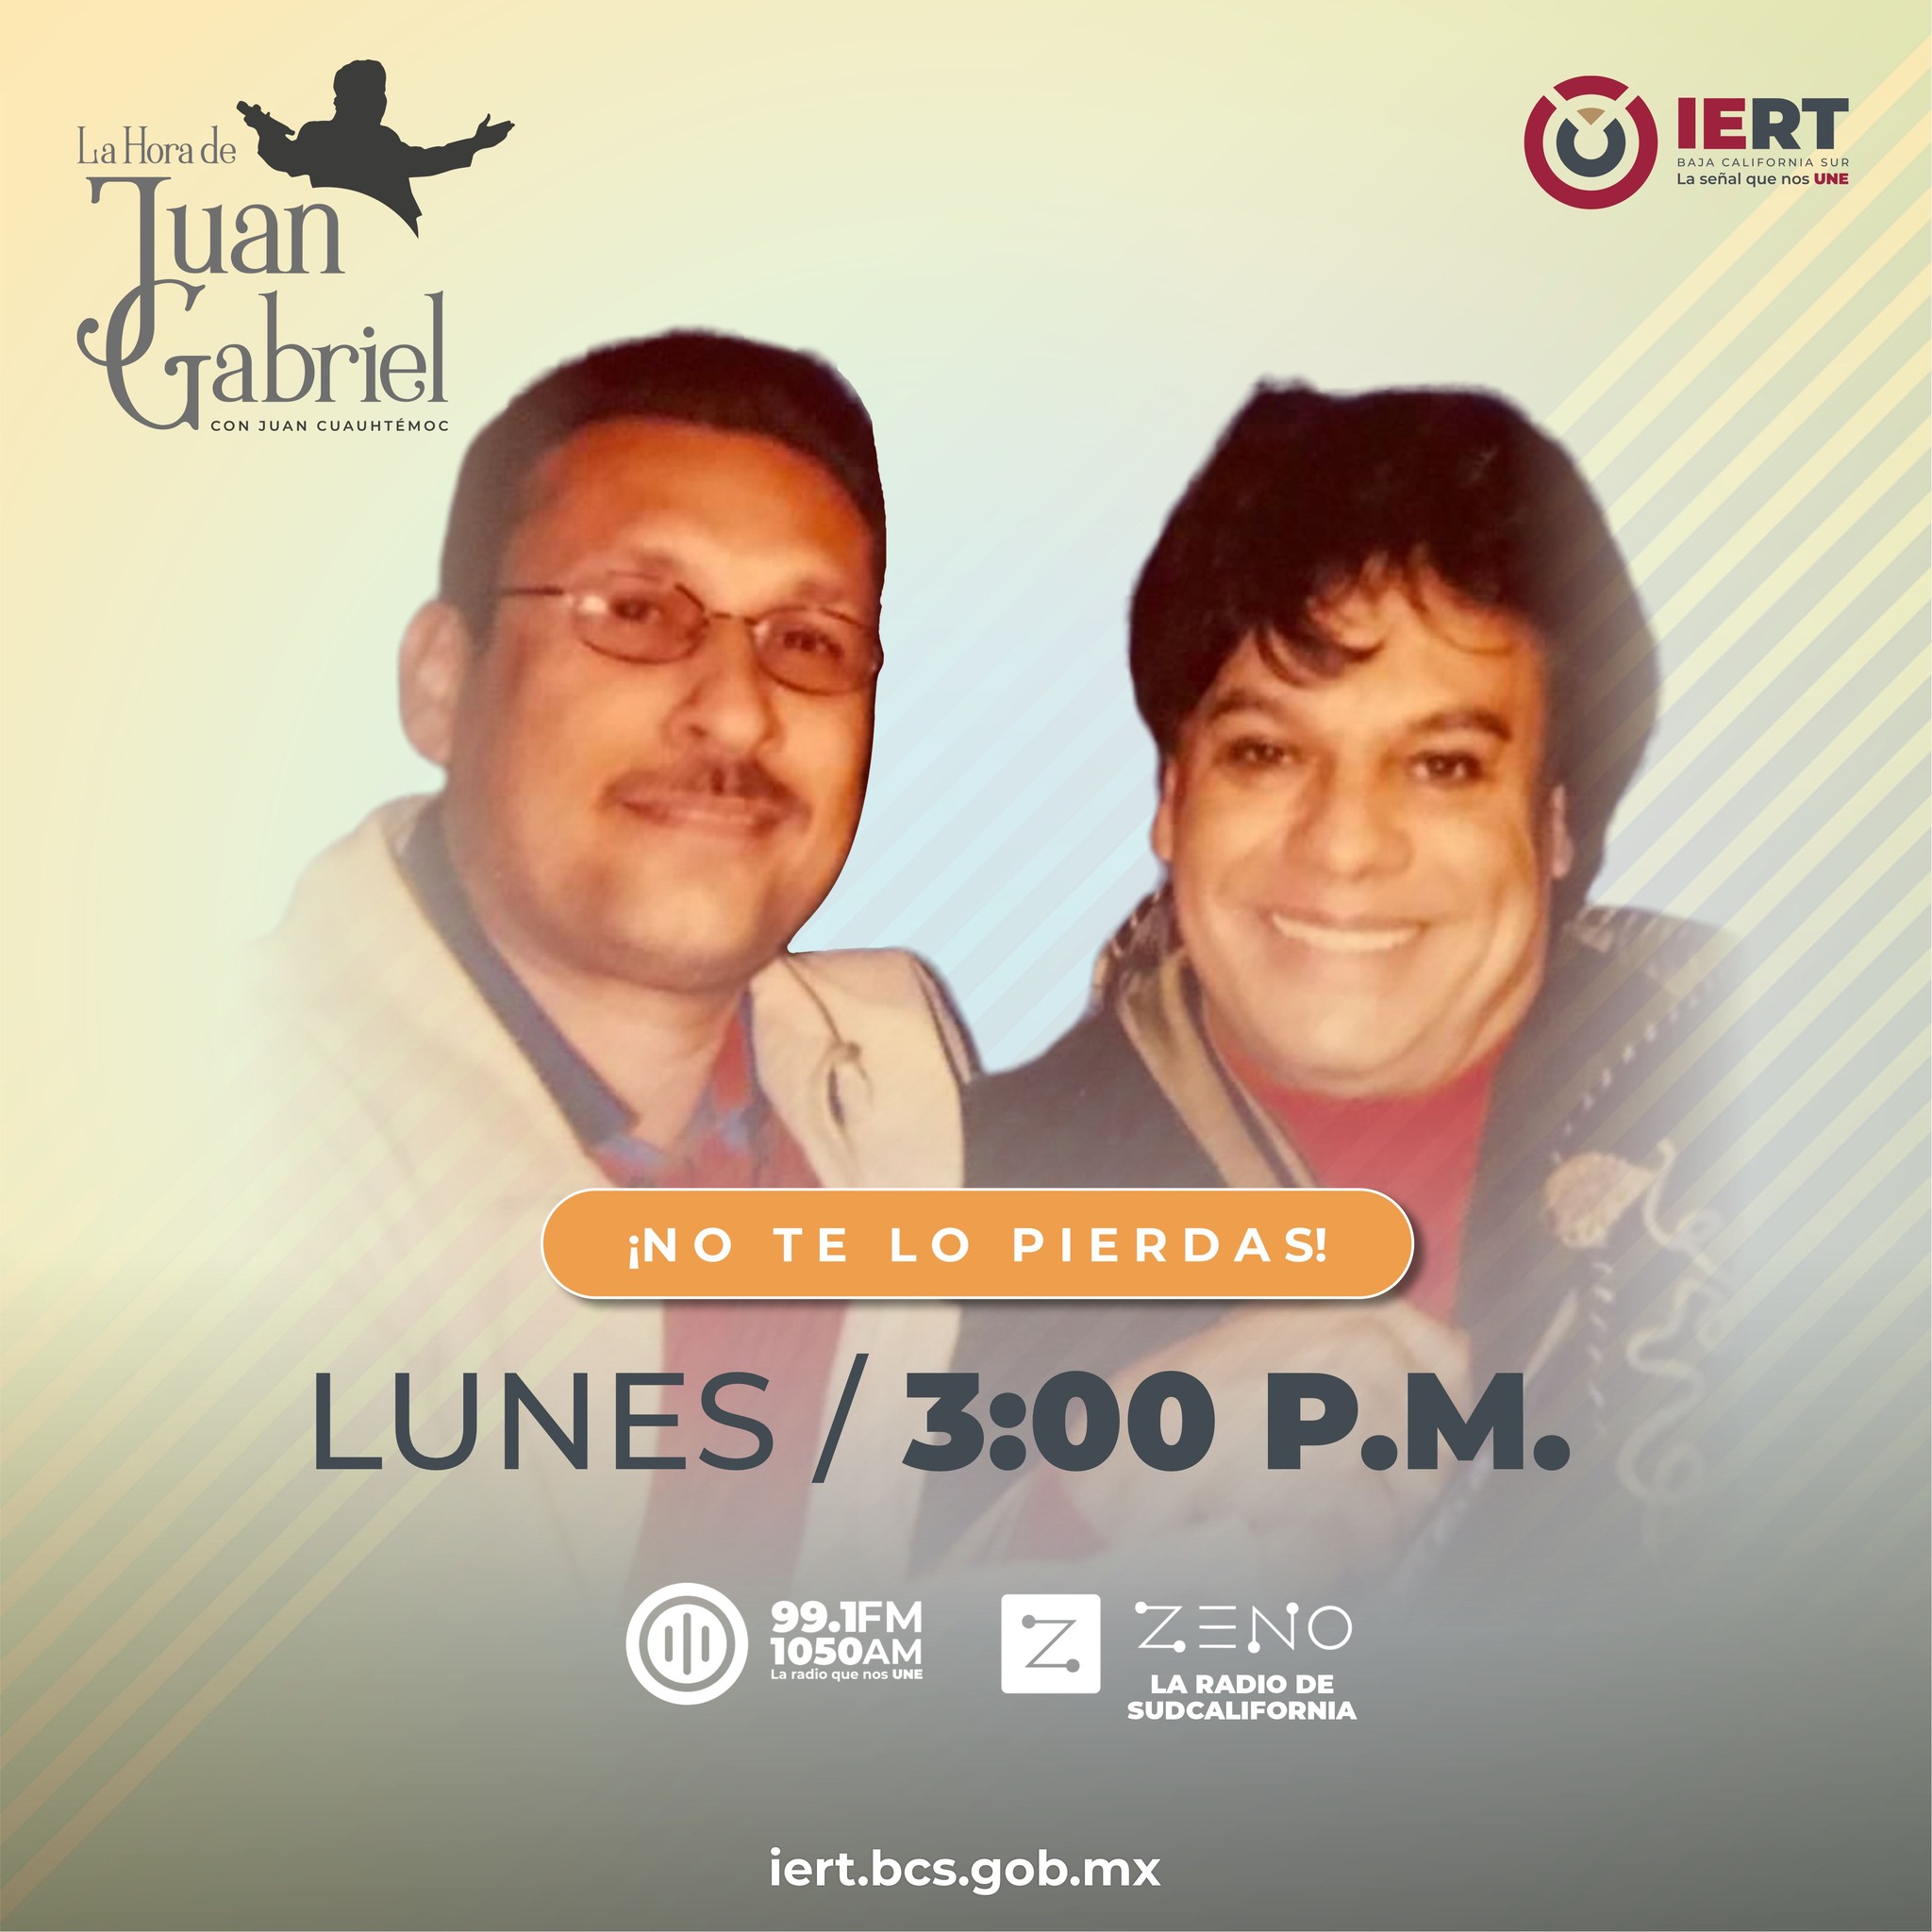 La Hora de Juan Gabriel con Juan Cuauhtémoc Murillo